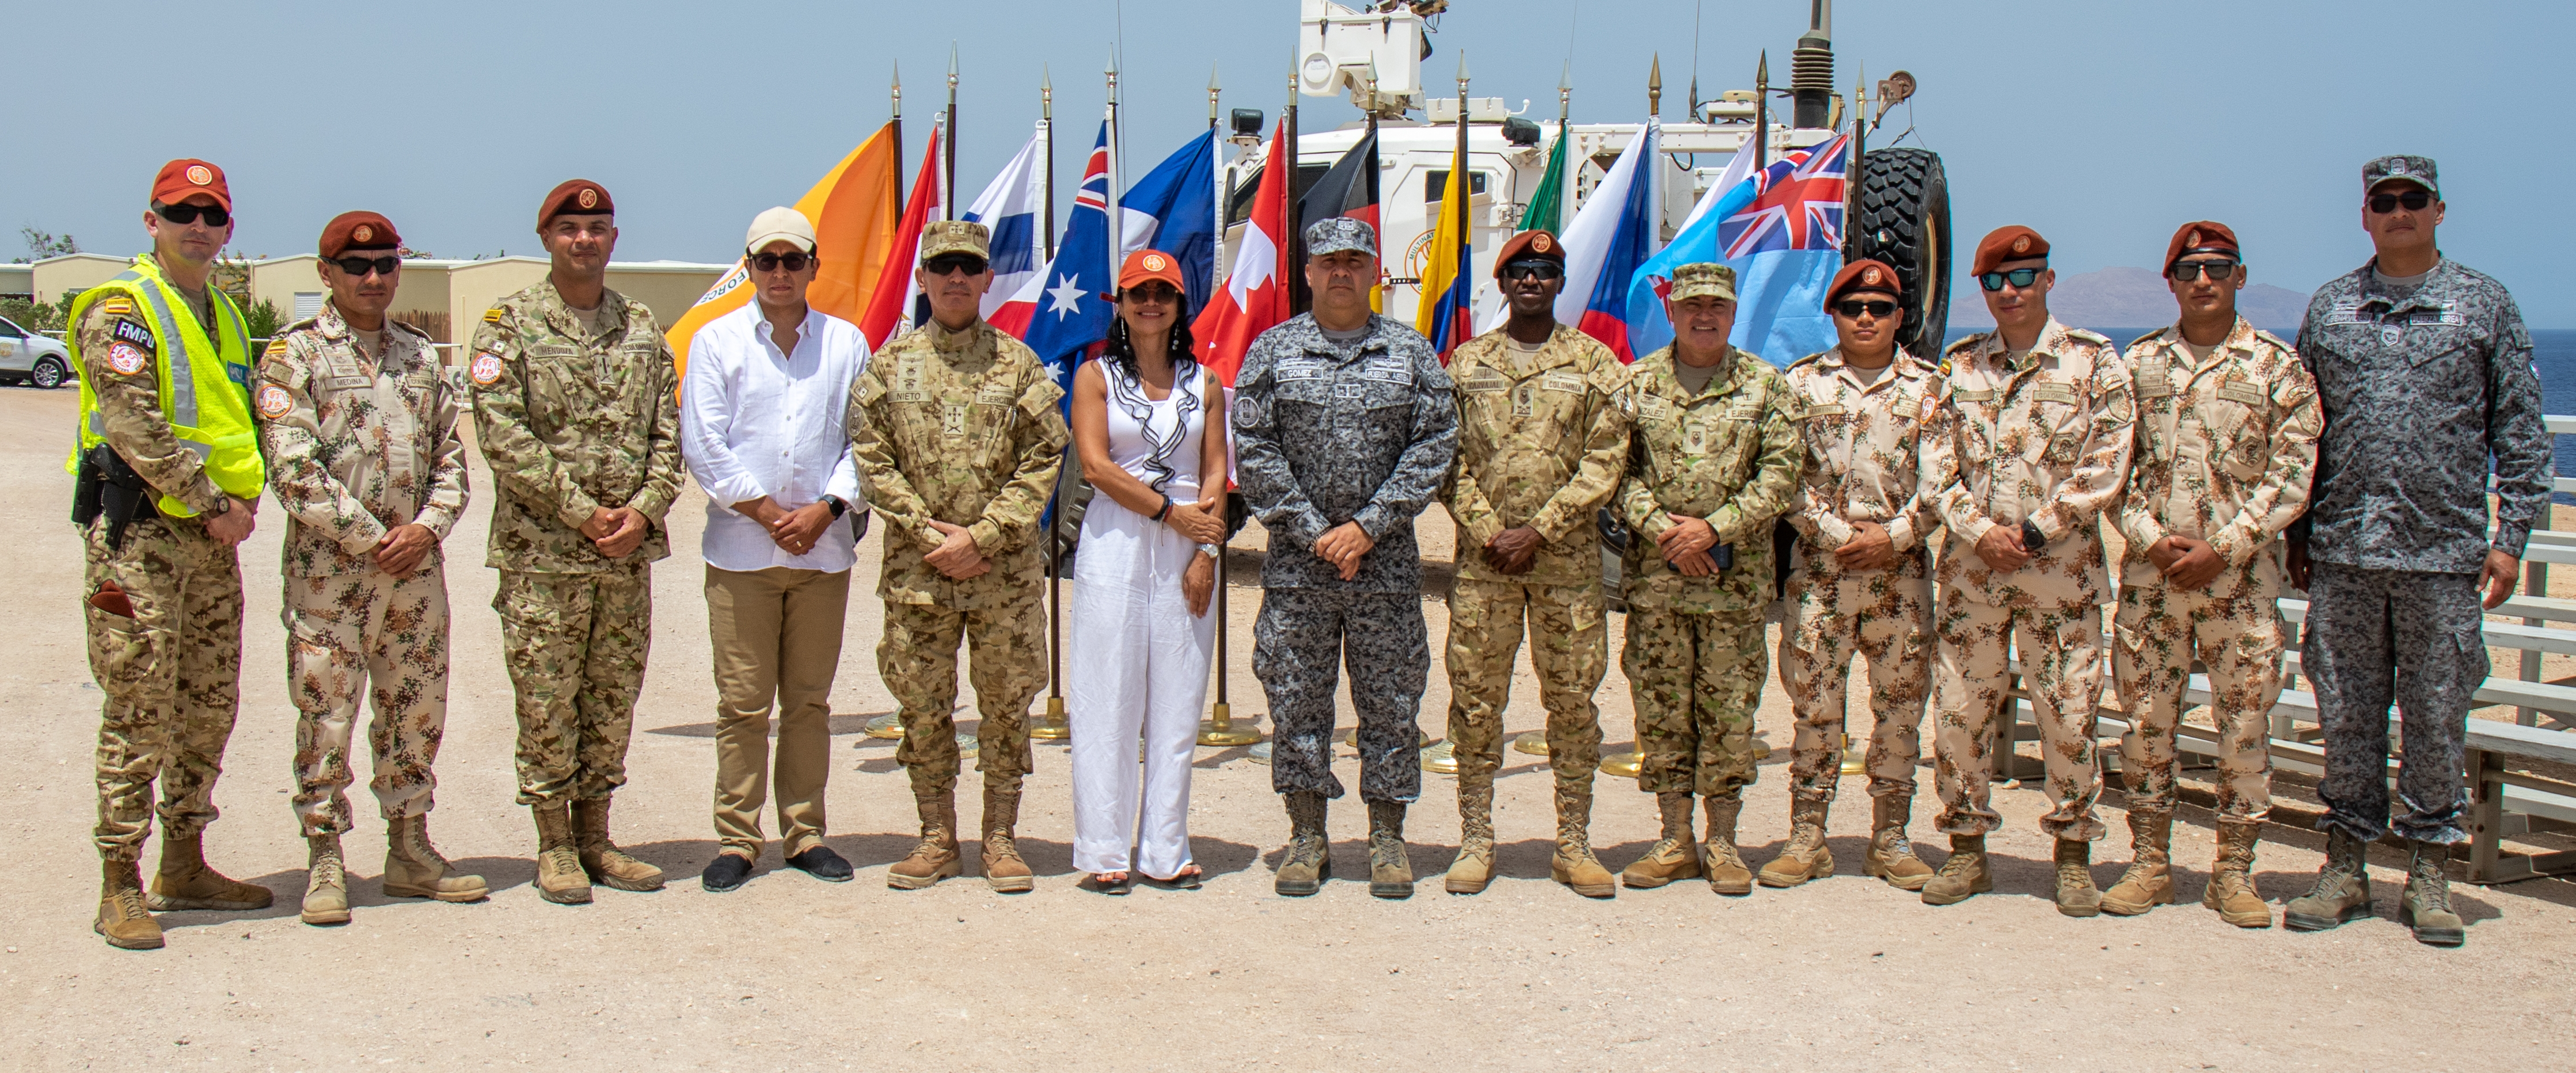 Embajadora de Colombia en Israel, Margarita Manjarrez, visitó la Península del Sinaí, junto con representantes de la Fuerza Multinacional de Paz y Observadores del Tratado de Paz entre Israel y Egipto